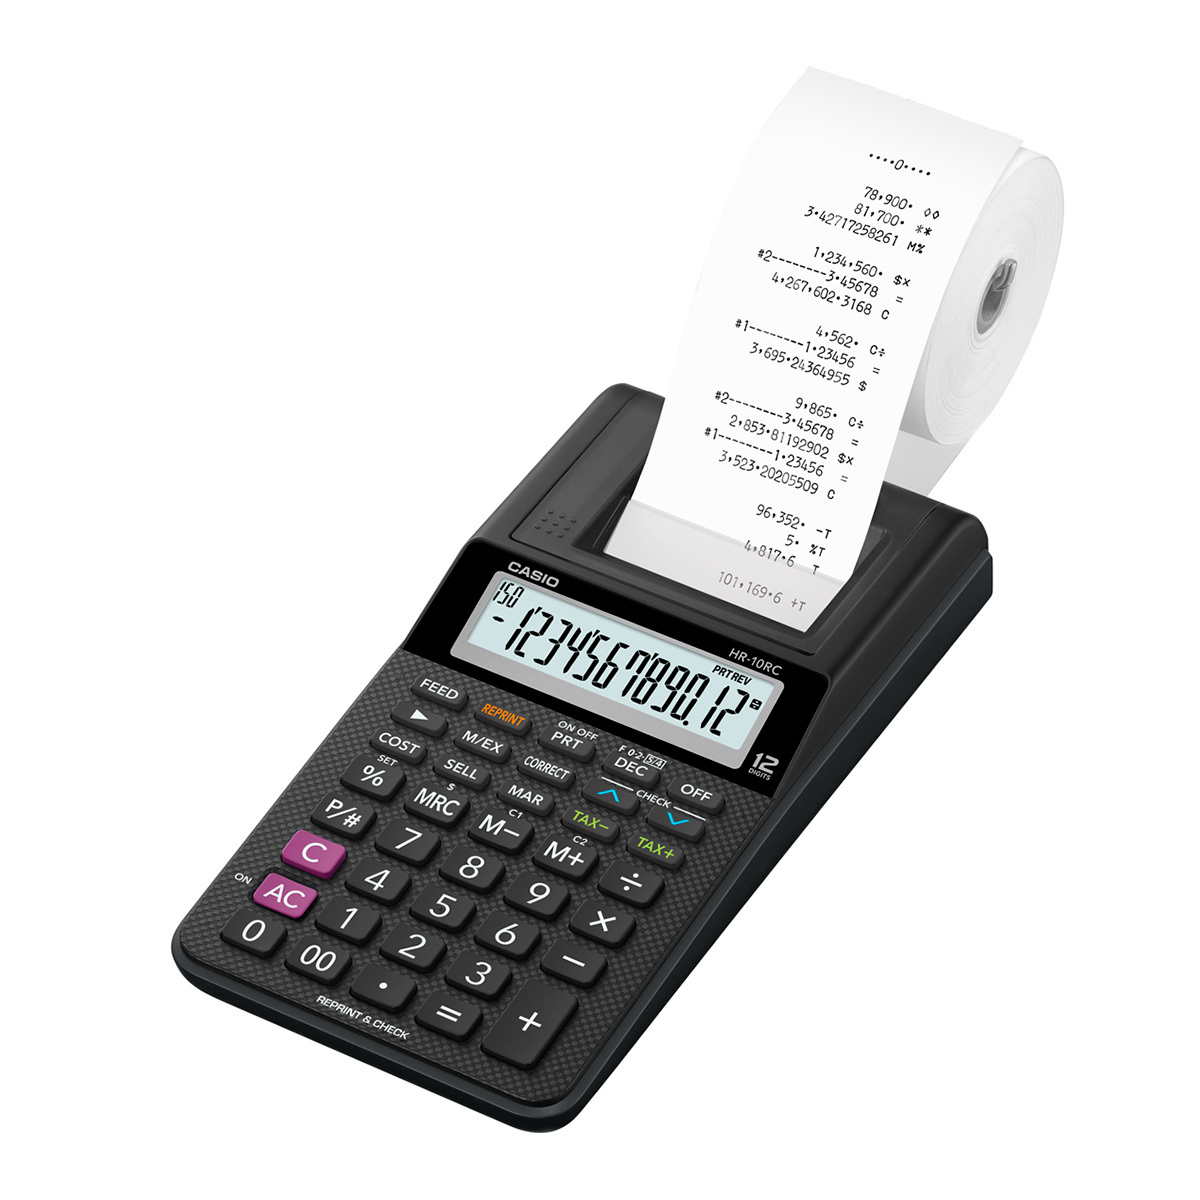 Calculadora Con Impresor Casio Sumadora Hr-10rc